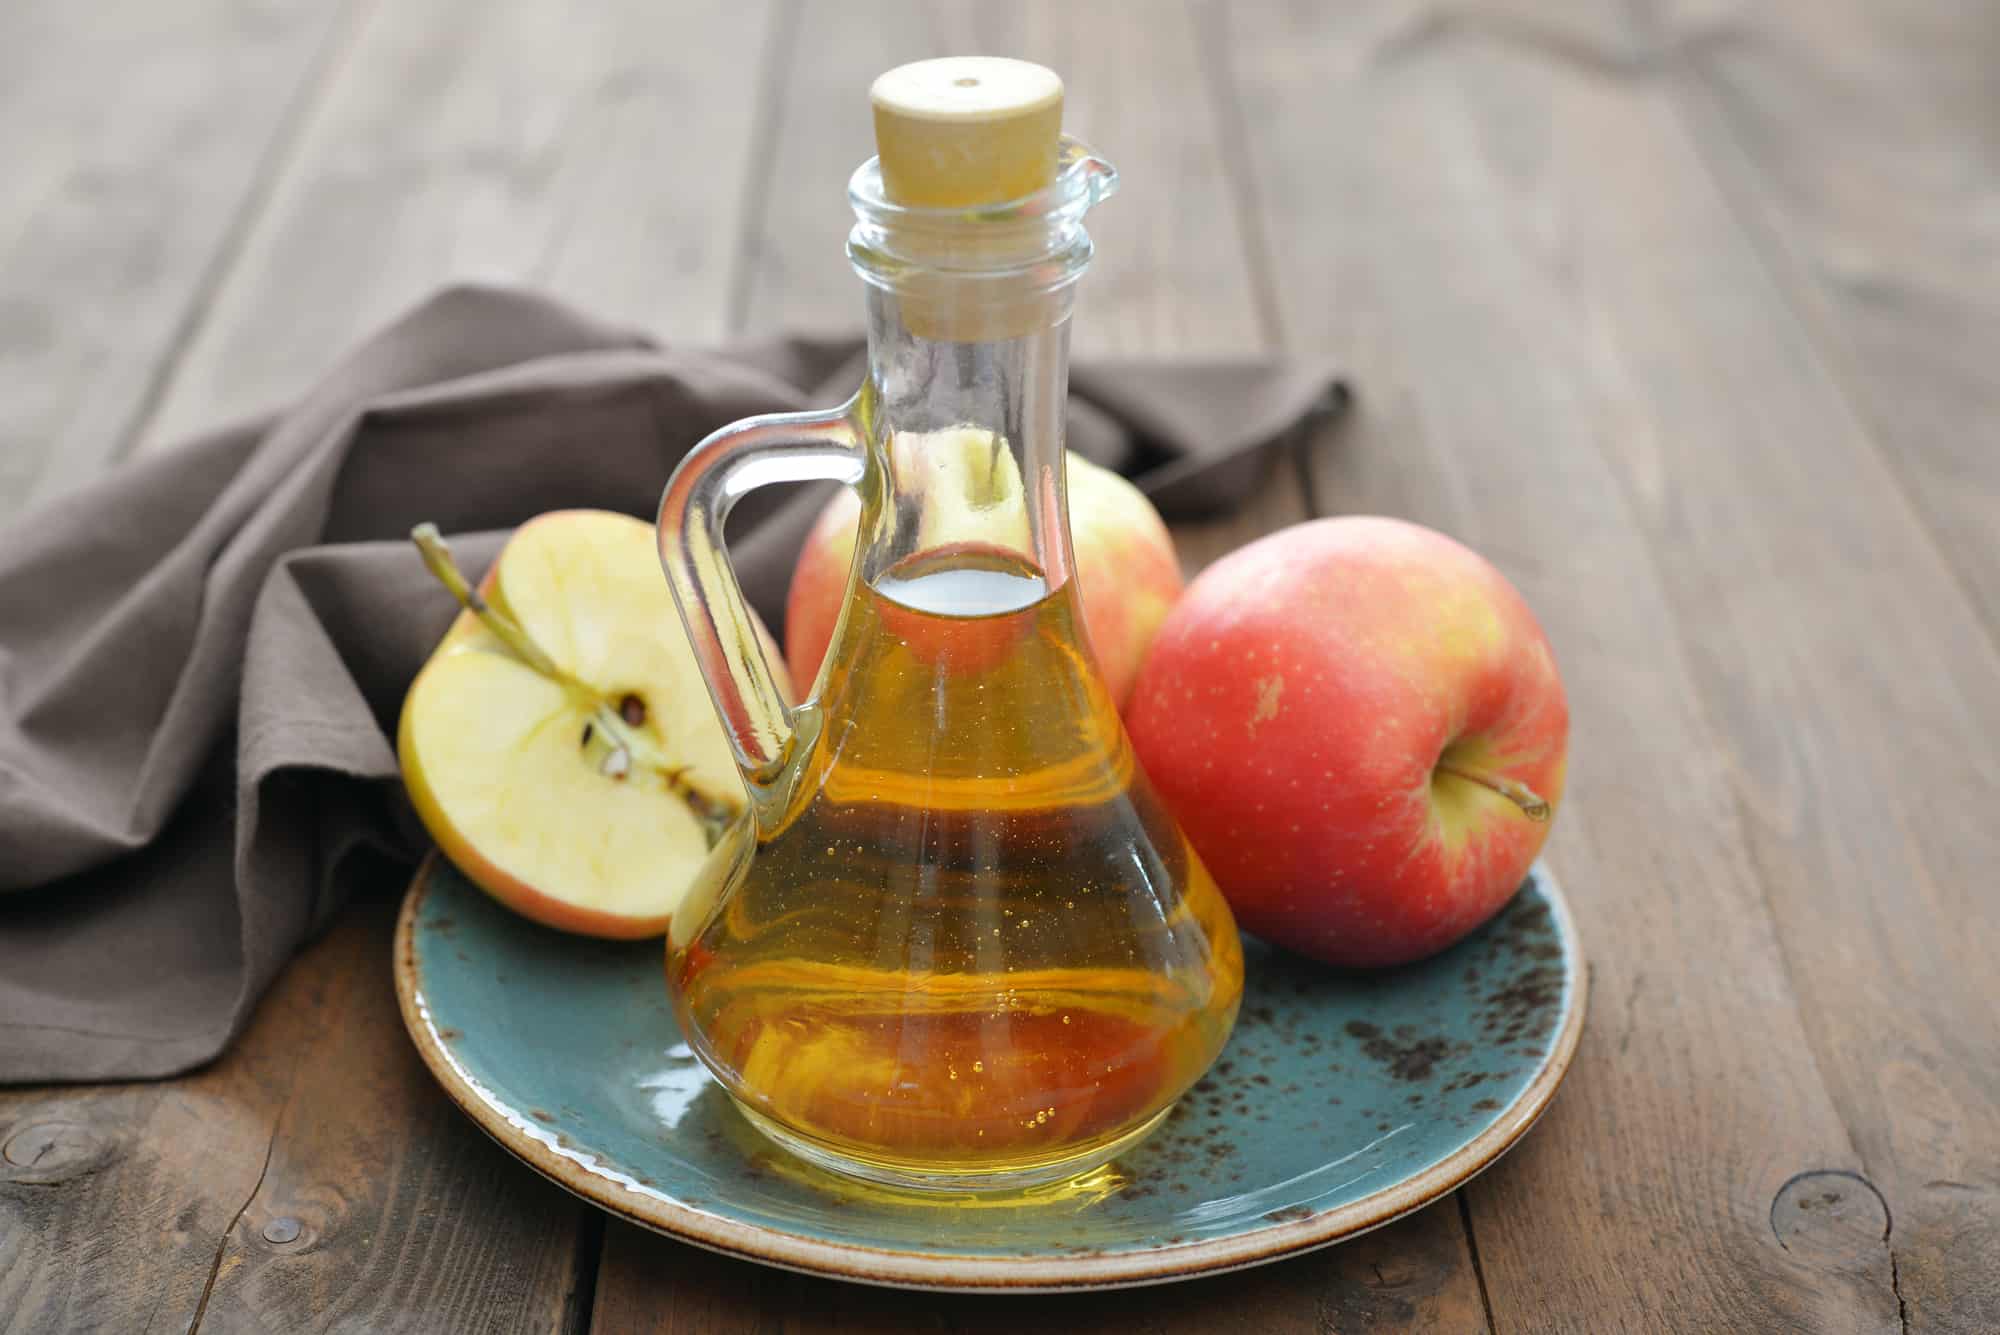 Apple cider vinegar in glass bottle and fresh apples